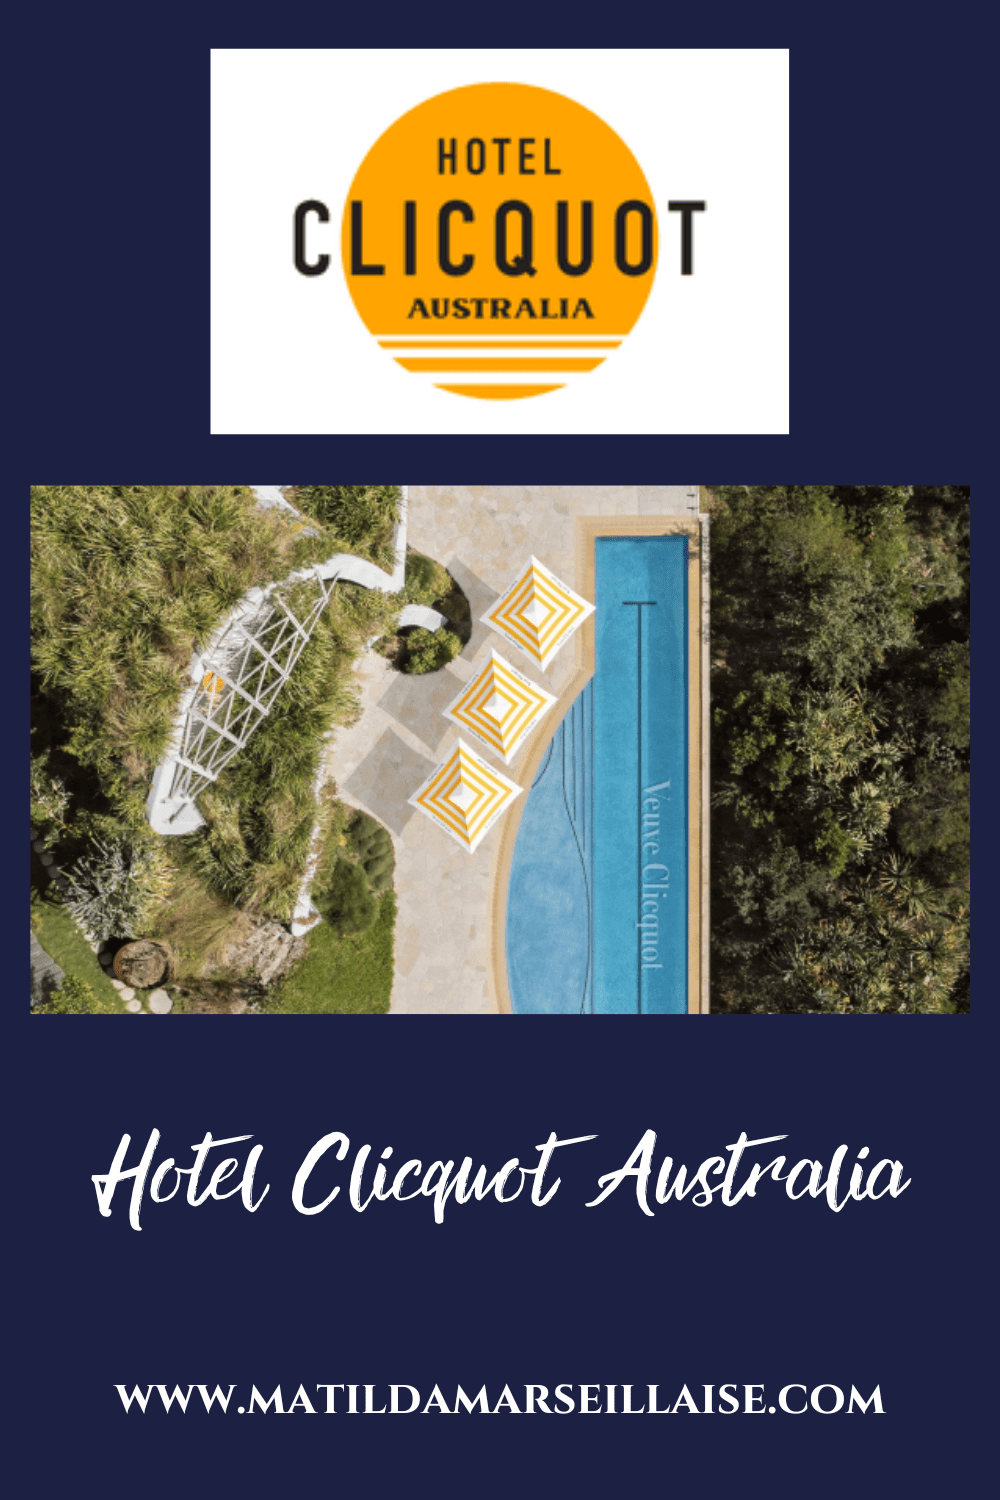 Hotel Clicquot Australia